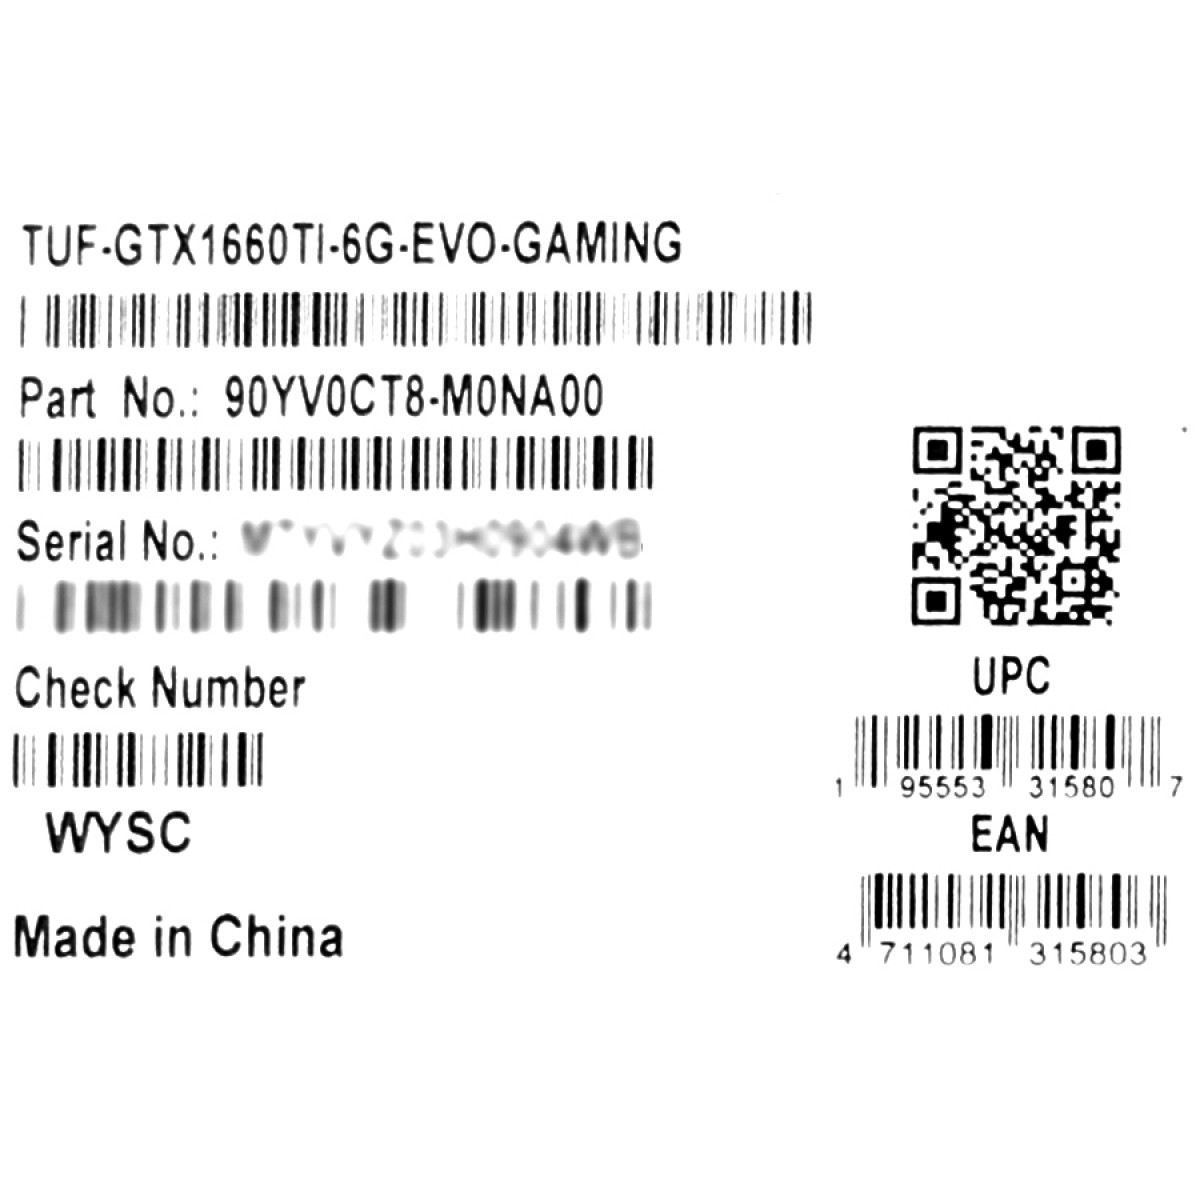 Placa de vídeo Asus TUF Gaming NVIDIA GeForce GTX 1660 Ti EVO, 6GB, GDDR6, TUF-GTX1660TI-6G-EVO-GAMING